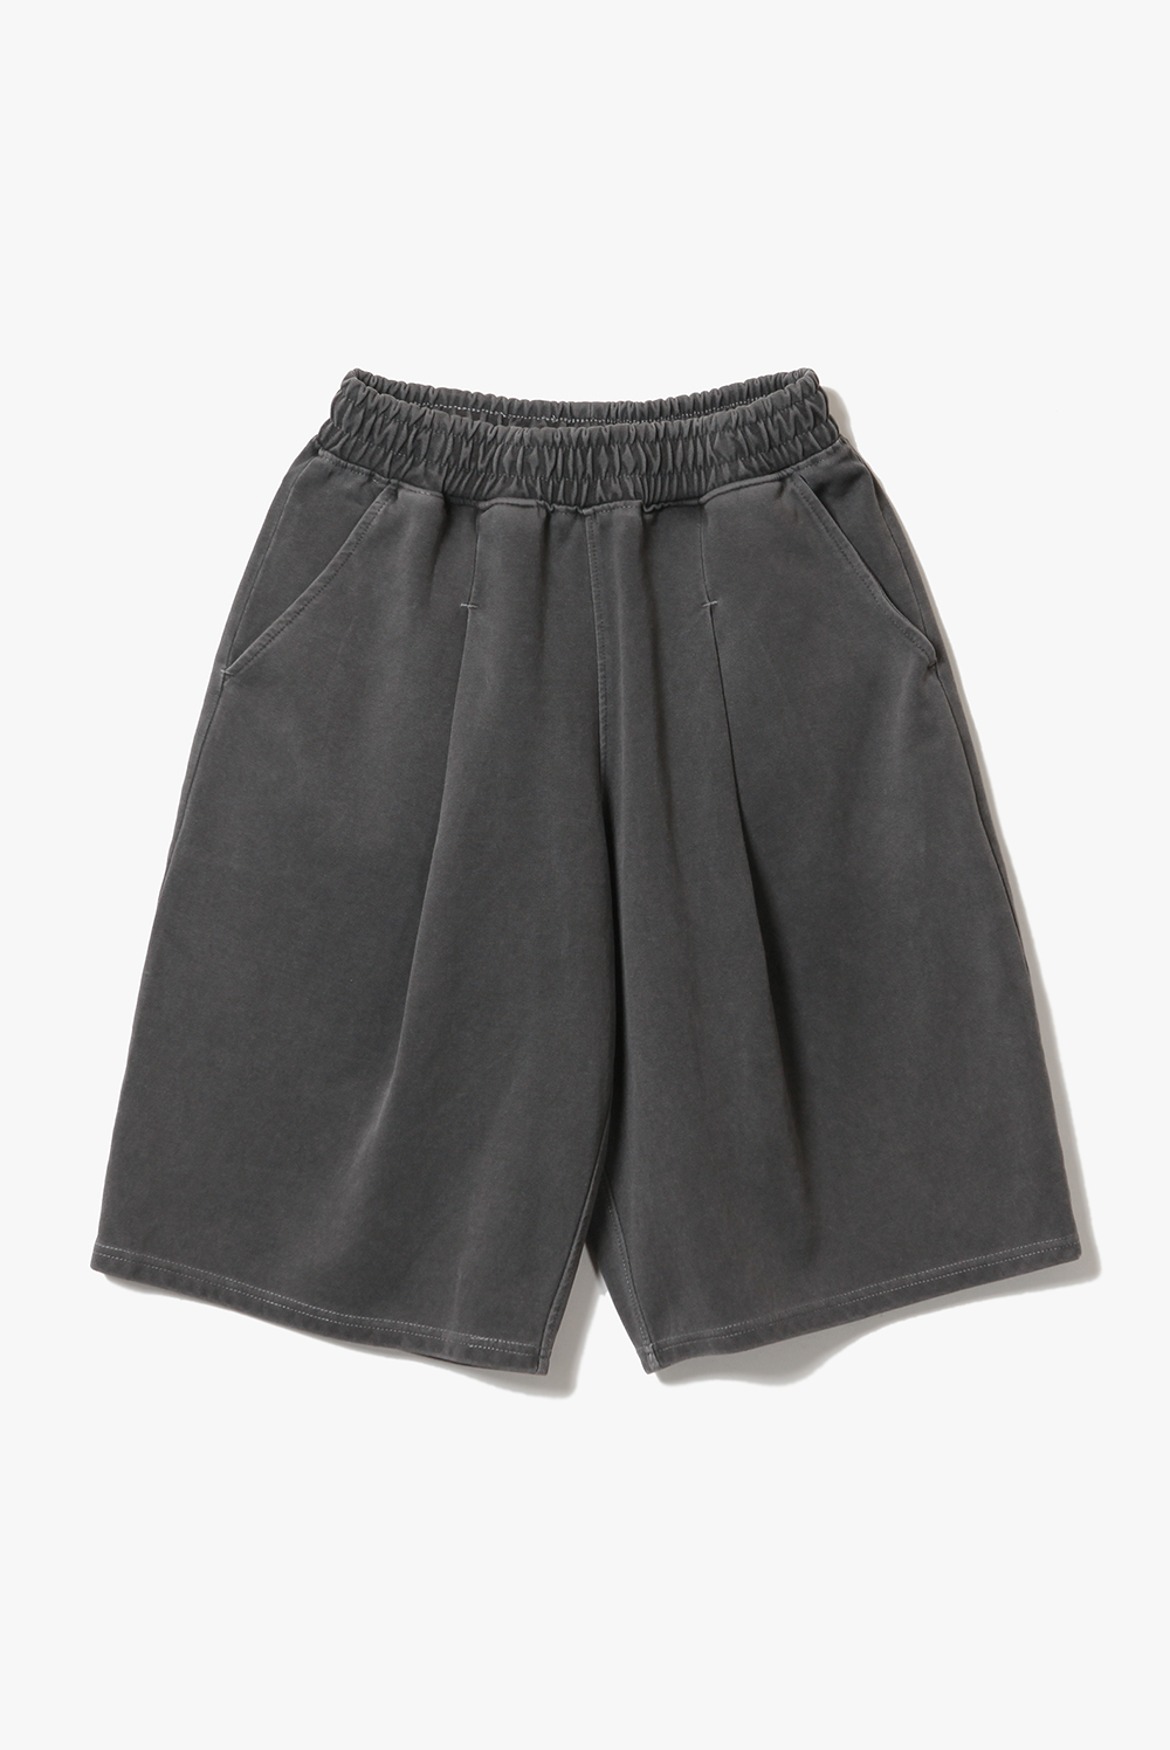 (5월 21일 예약배송) Deep One Tuck Pigment Sweat Shorts [Charcoal]